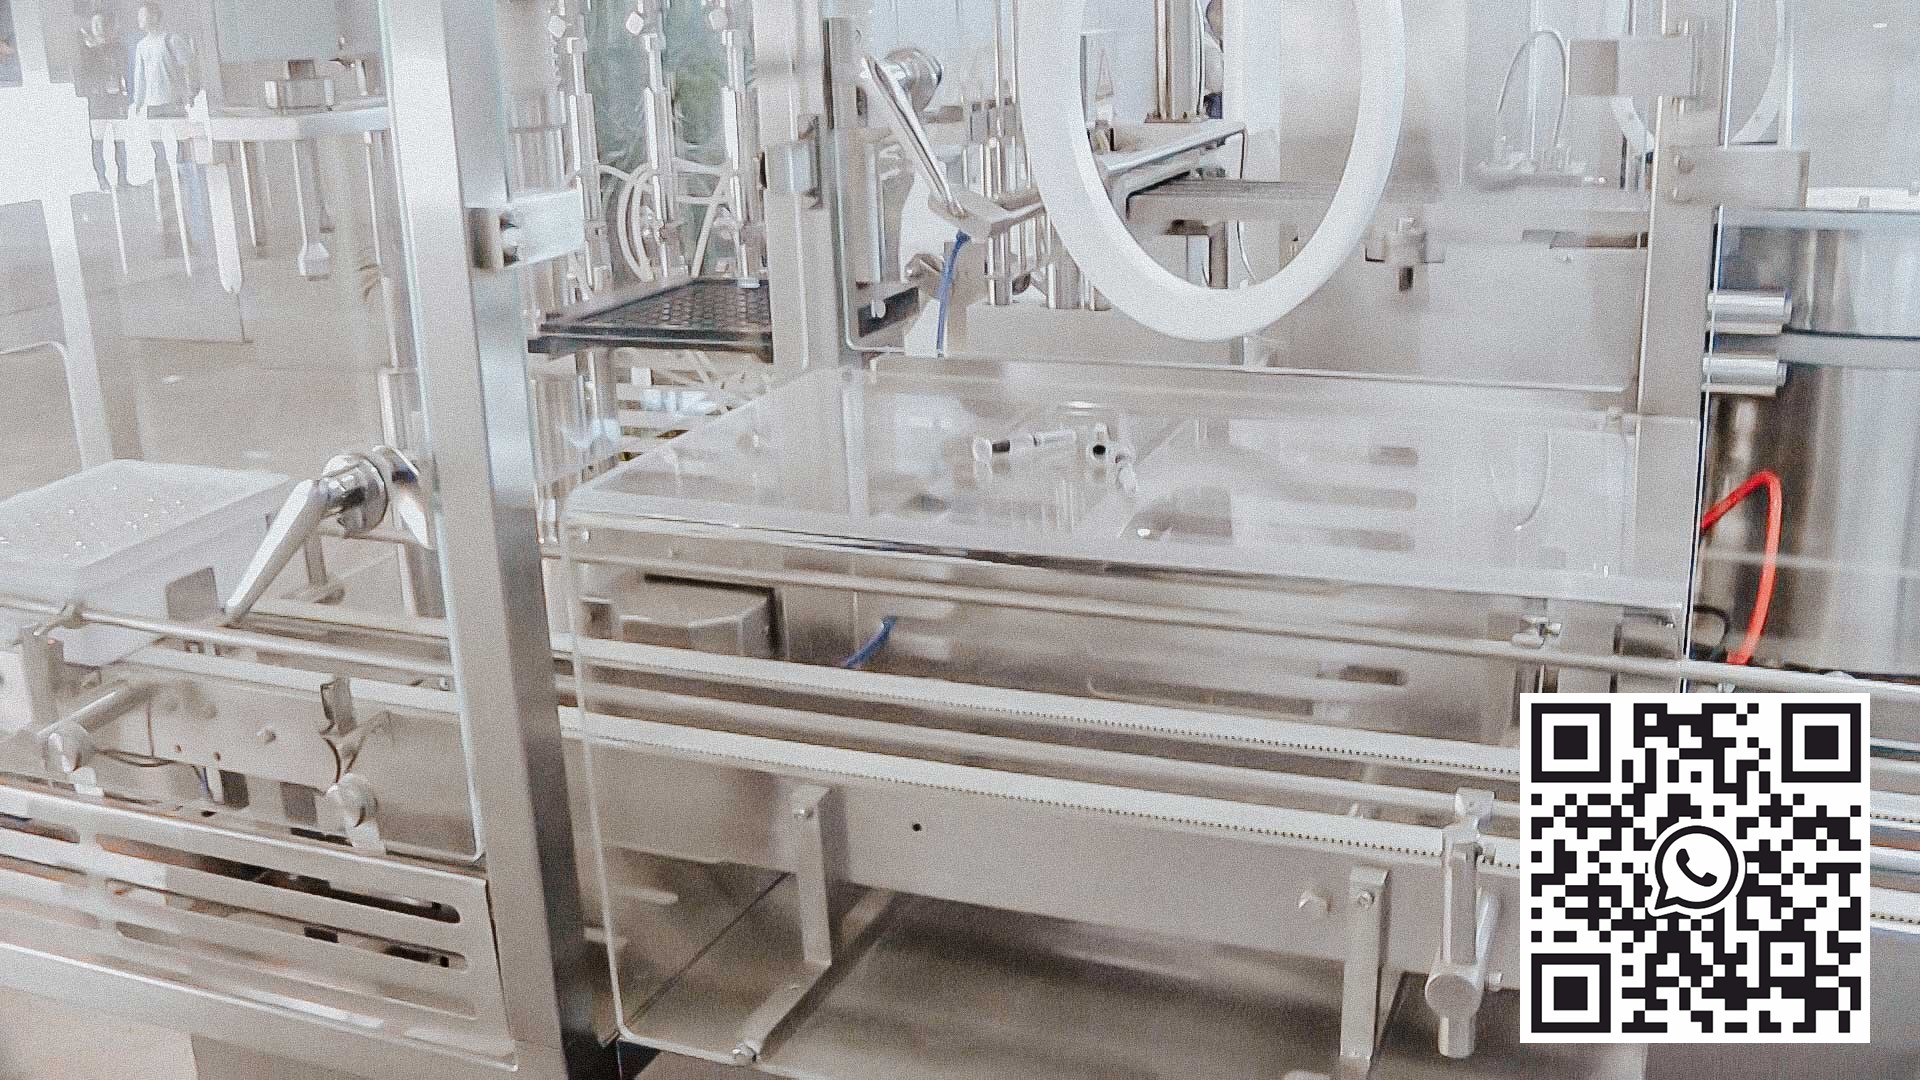 Automatyczna myjnia sterylizacyjna do butelkowania i zamykania butelek szklanych